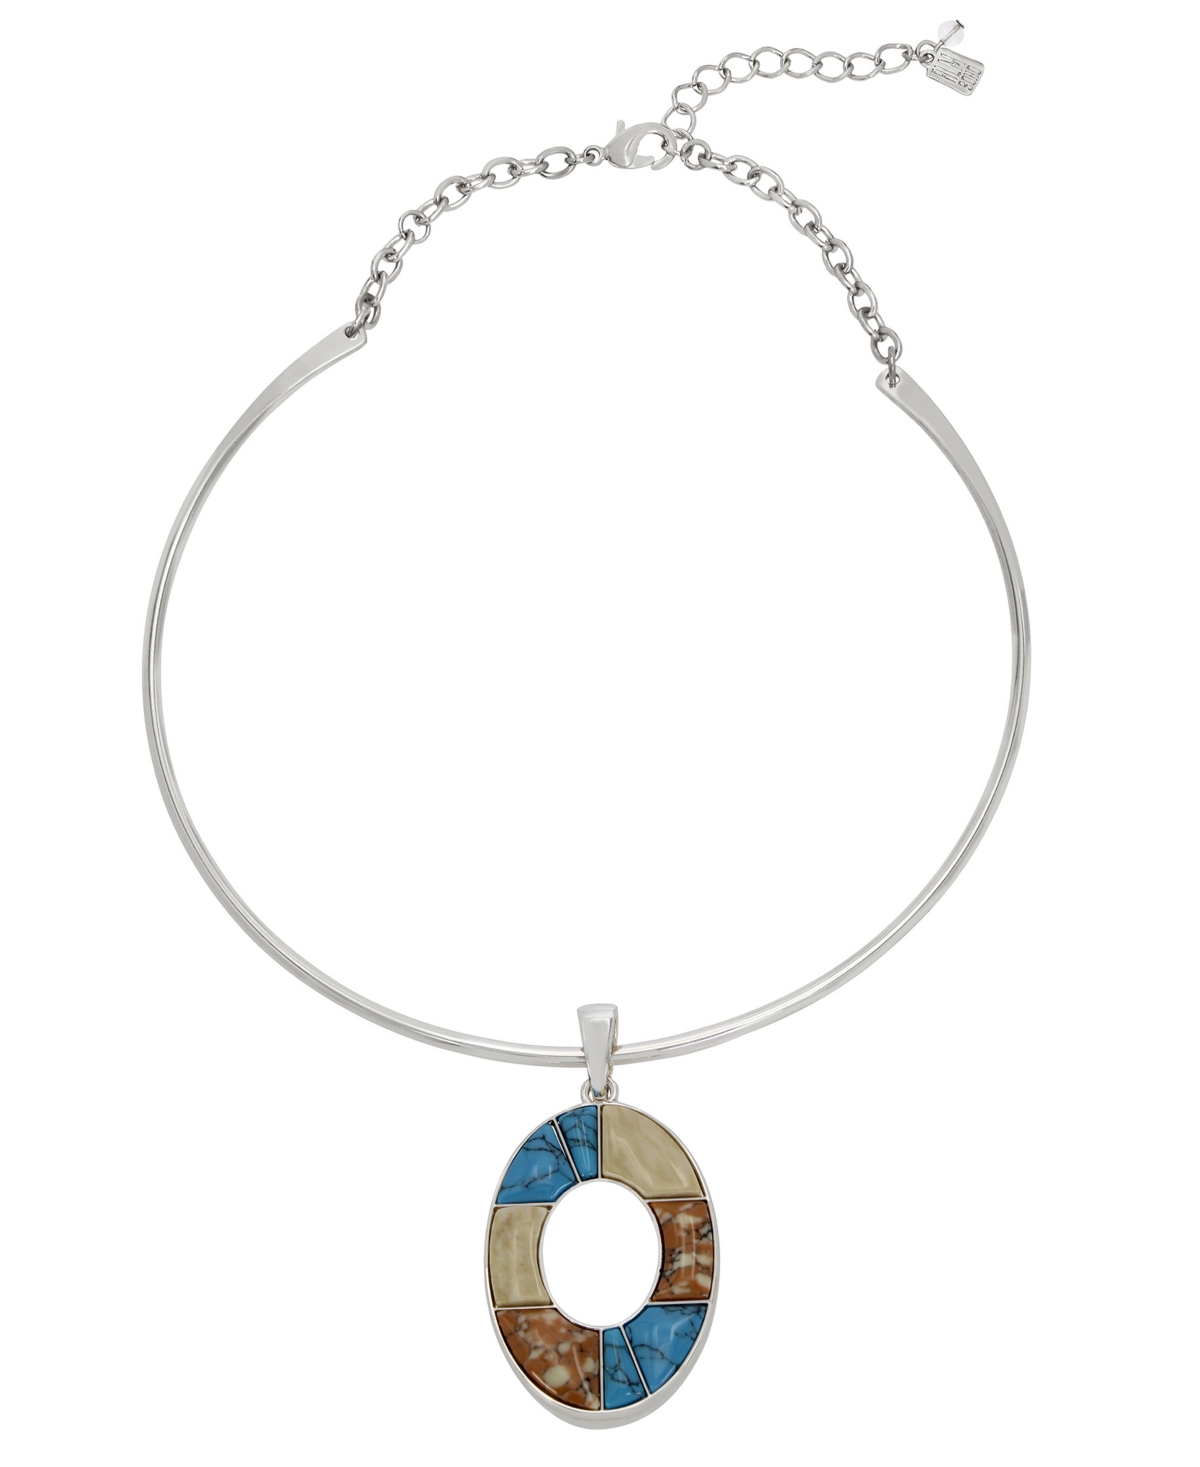 Semi-Precious Mixed Stone Oval Pendant Wire Necklace - Multi, Silver